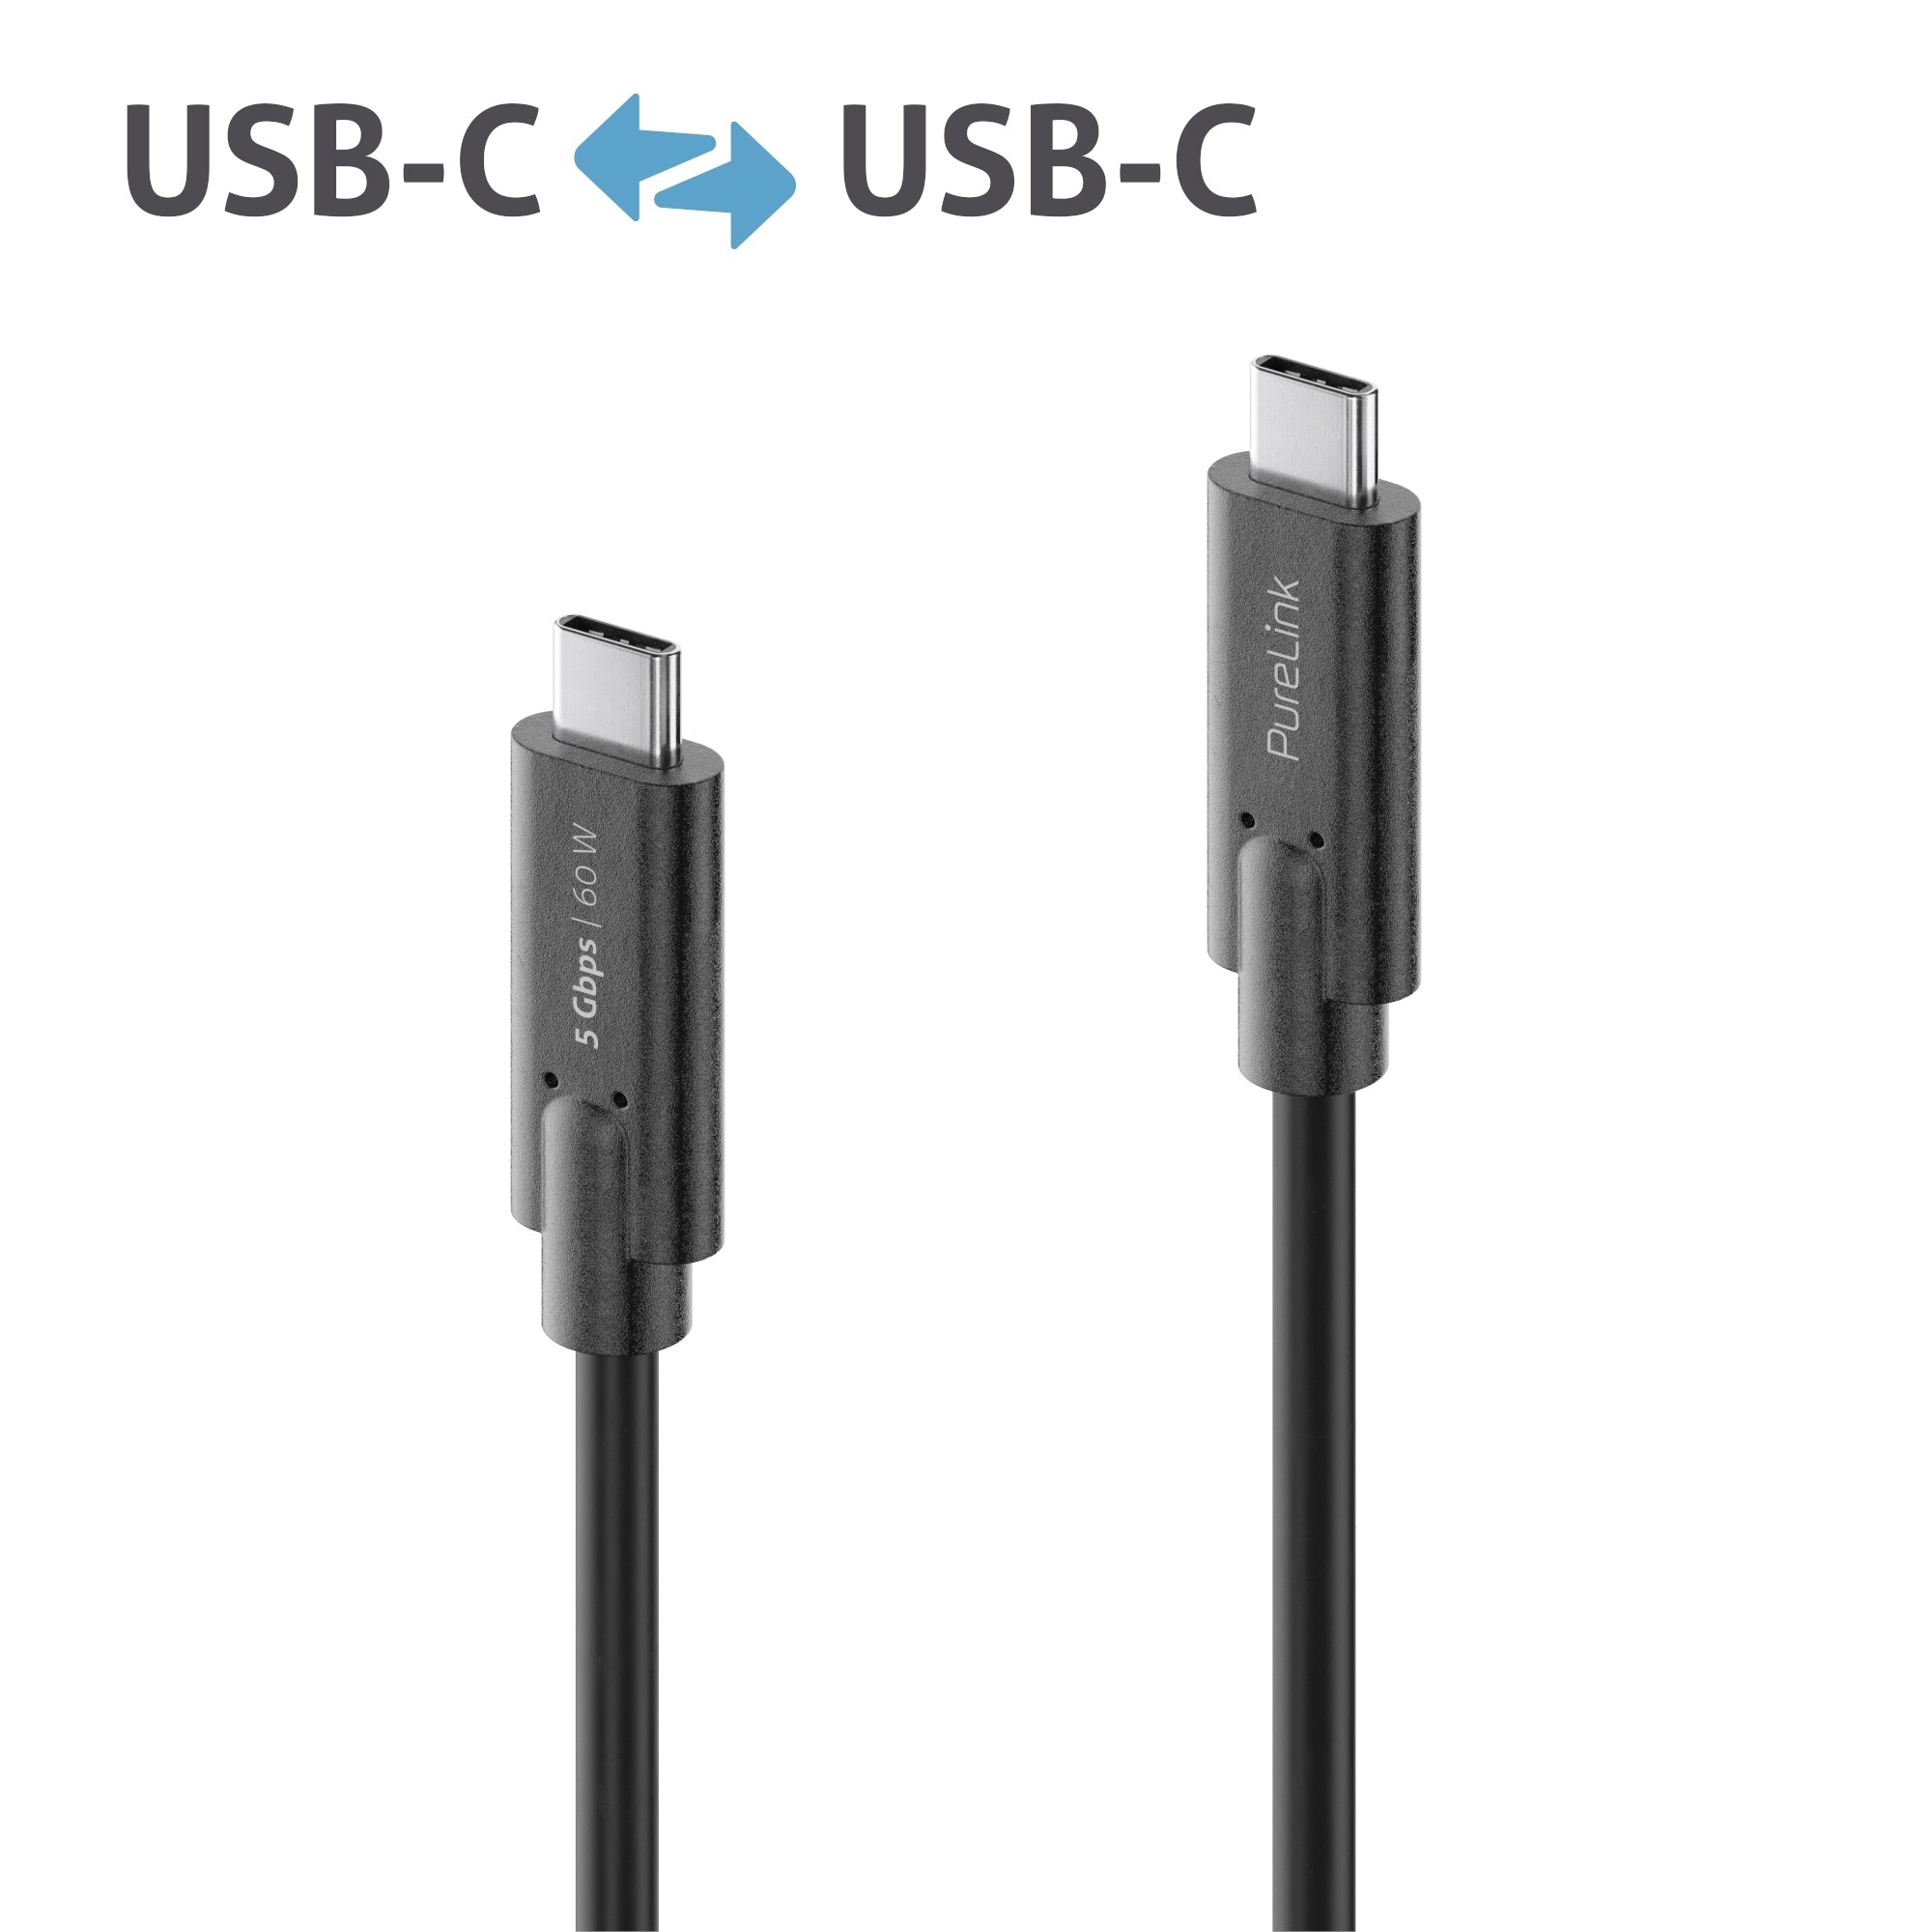 Purelink-IS2501-015-USB-C-auf-USB-C-Kabel-1-5m-schwarz